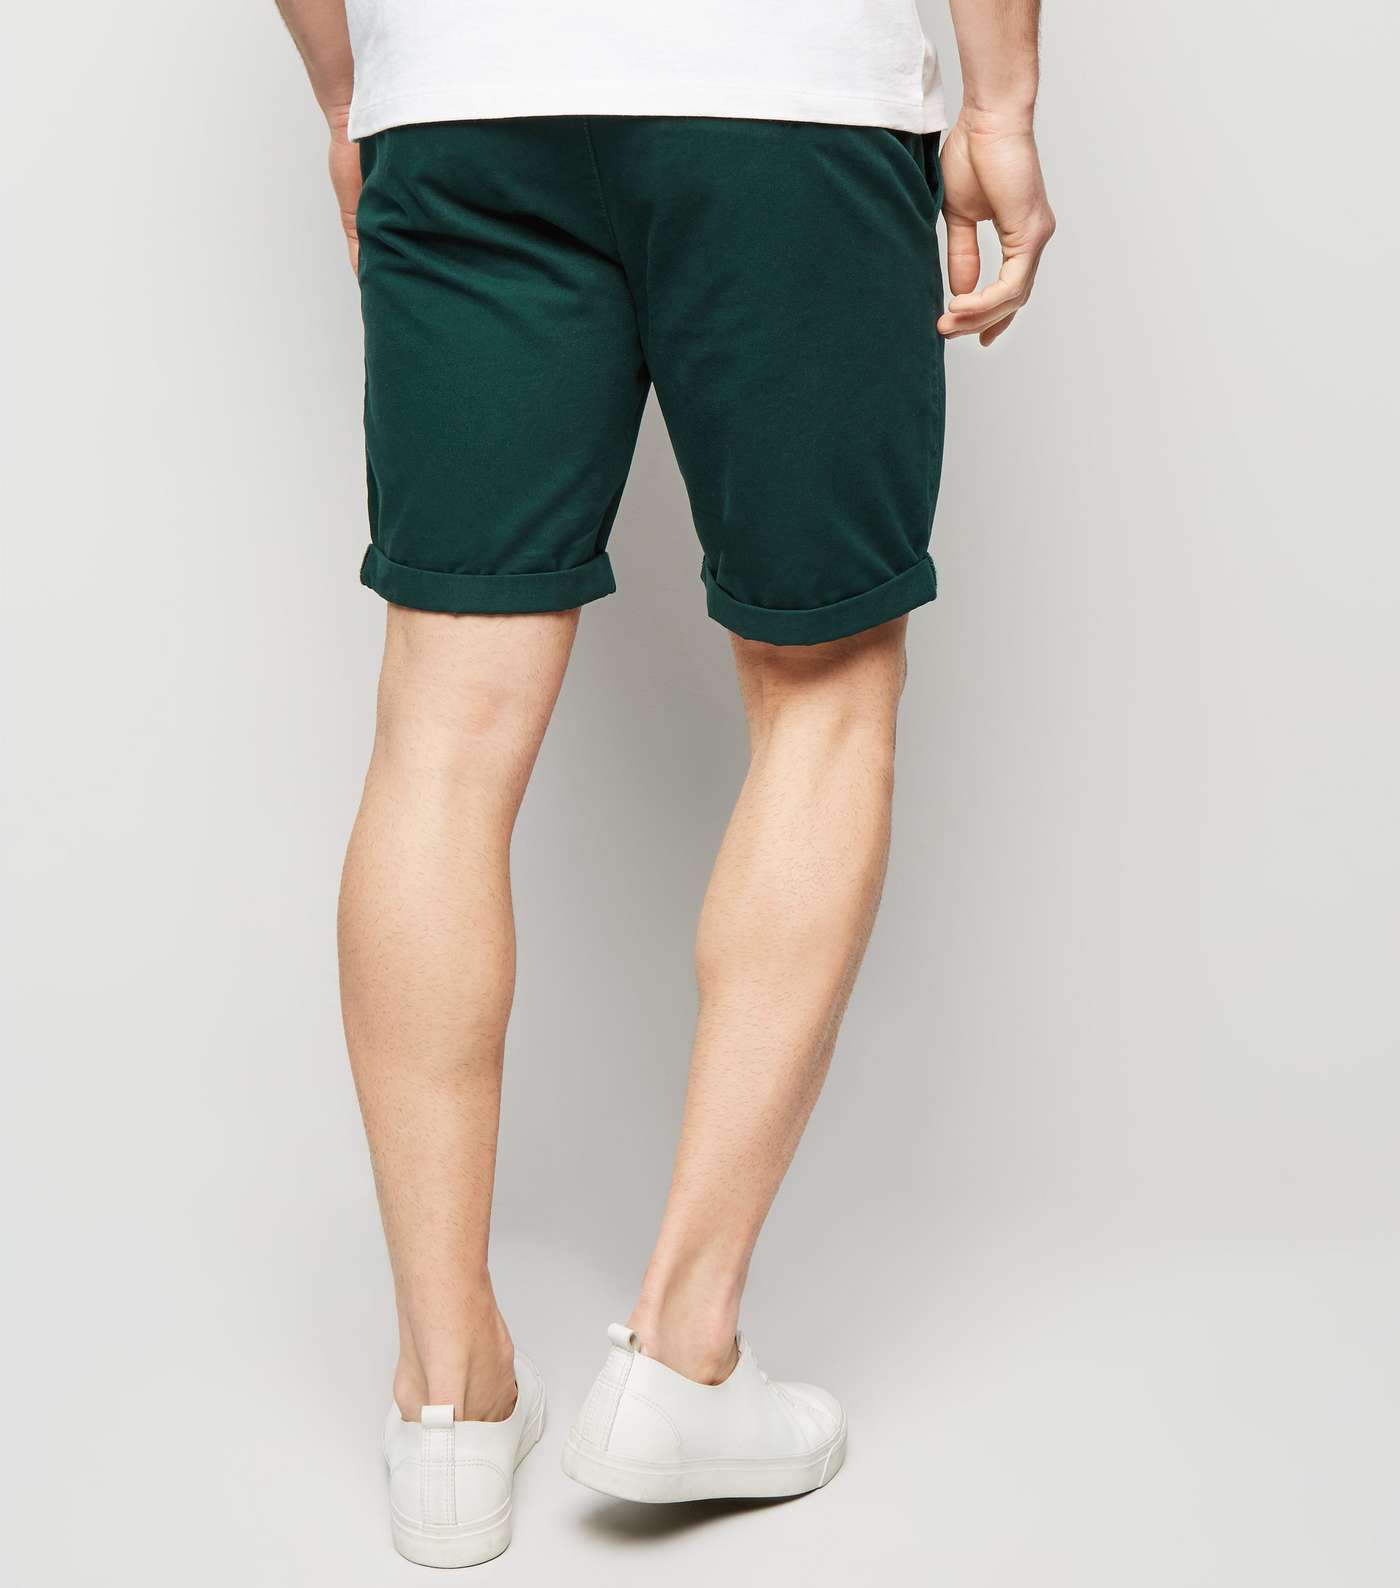 Teal Chino Shorts Image 3